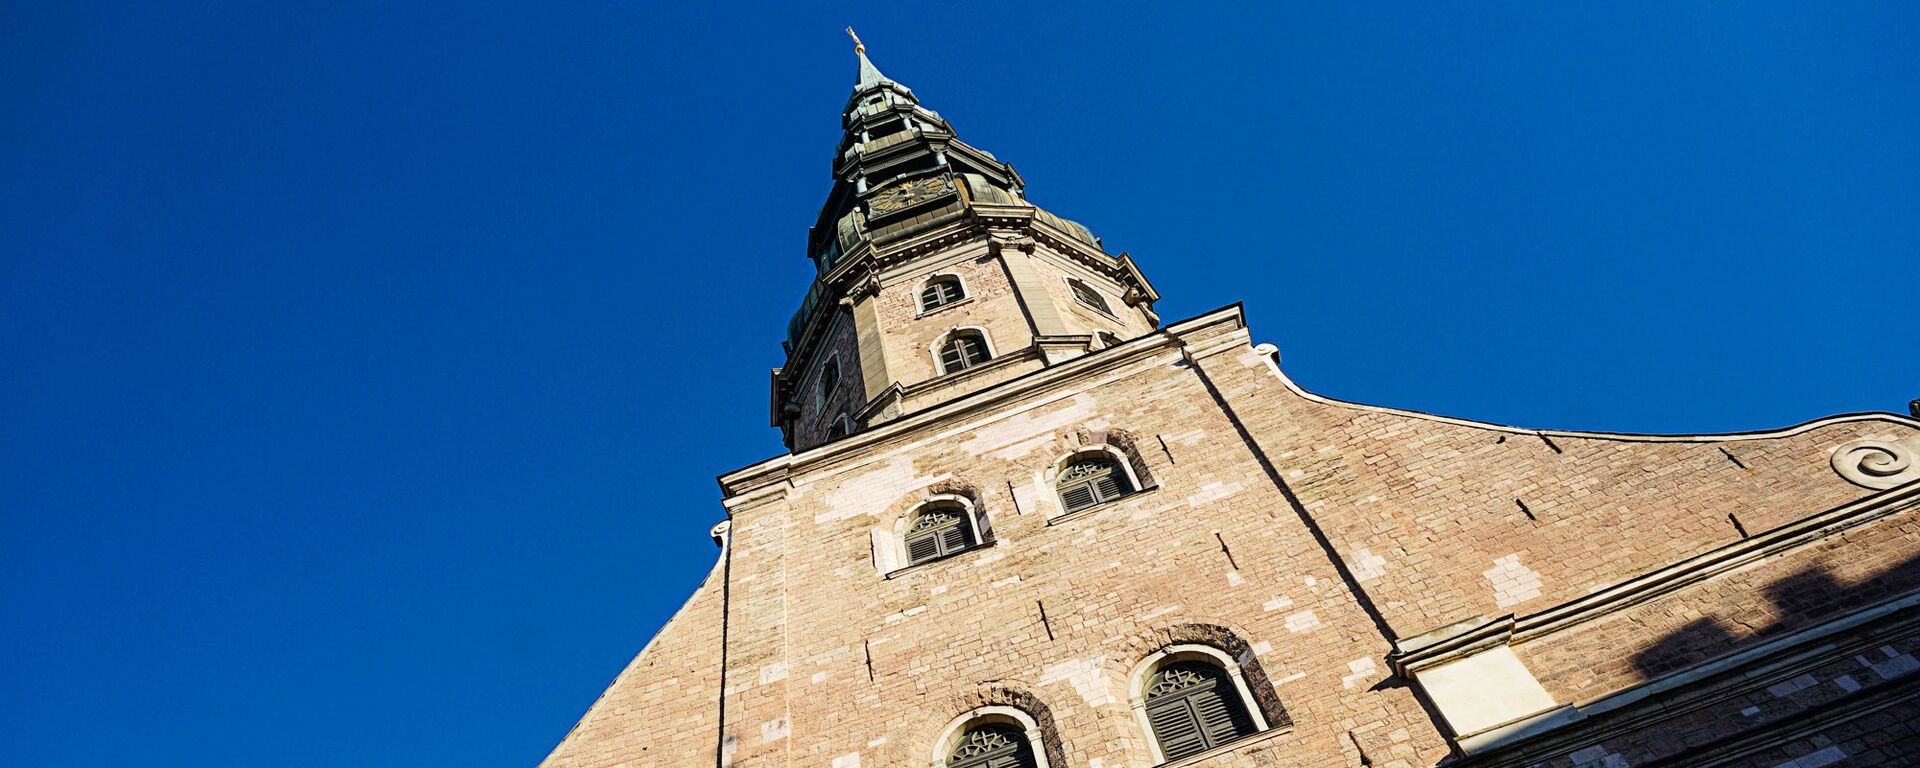 Церковь Святого Петра - Sputnik Латвия, 1920, 13.12.2021